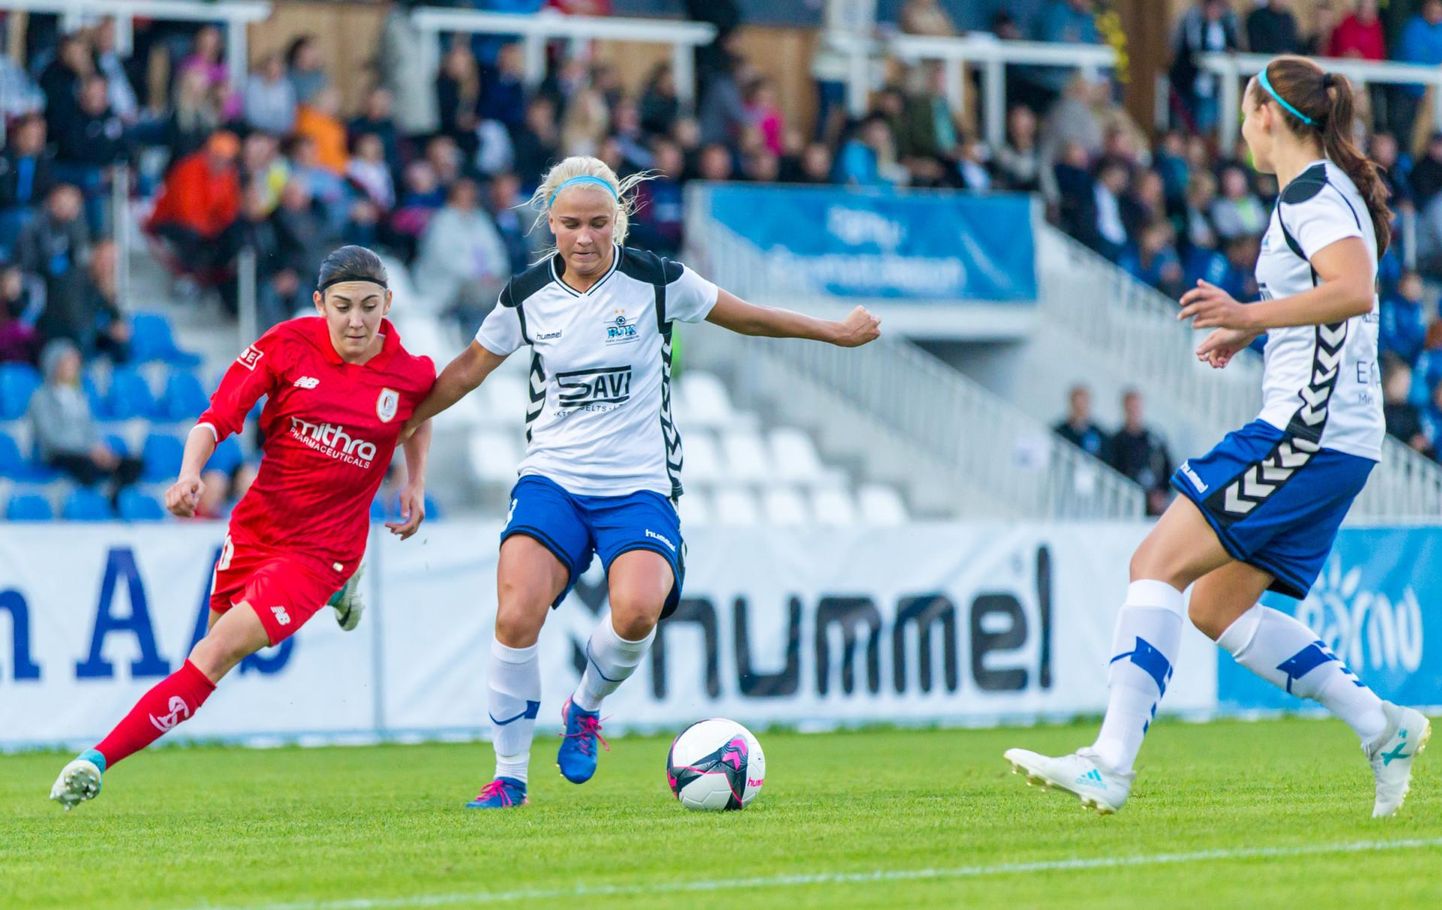 13 korda Eesti meistriks kroonitud Pärnu jalgpalliklubi naiskond, kes osales tunamullu eurosarjaski, lõpetab meistriliigas mängimise.